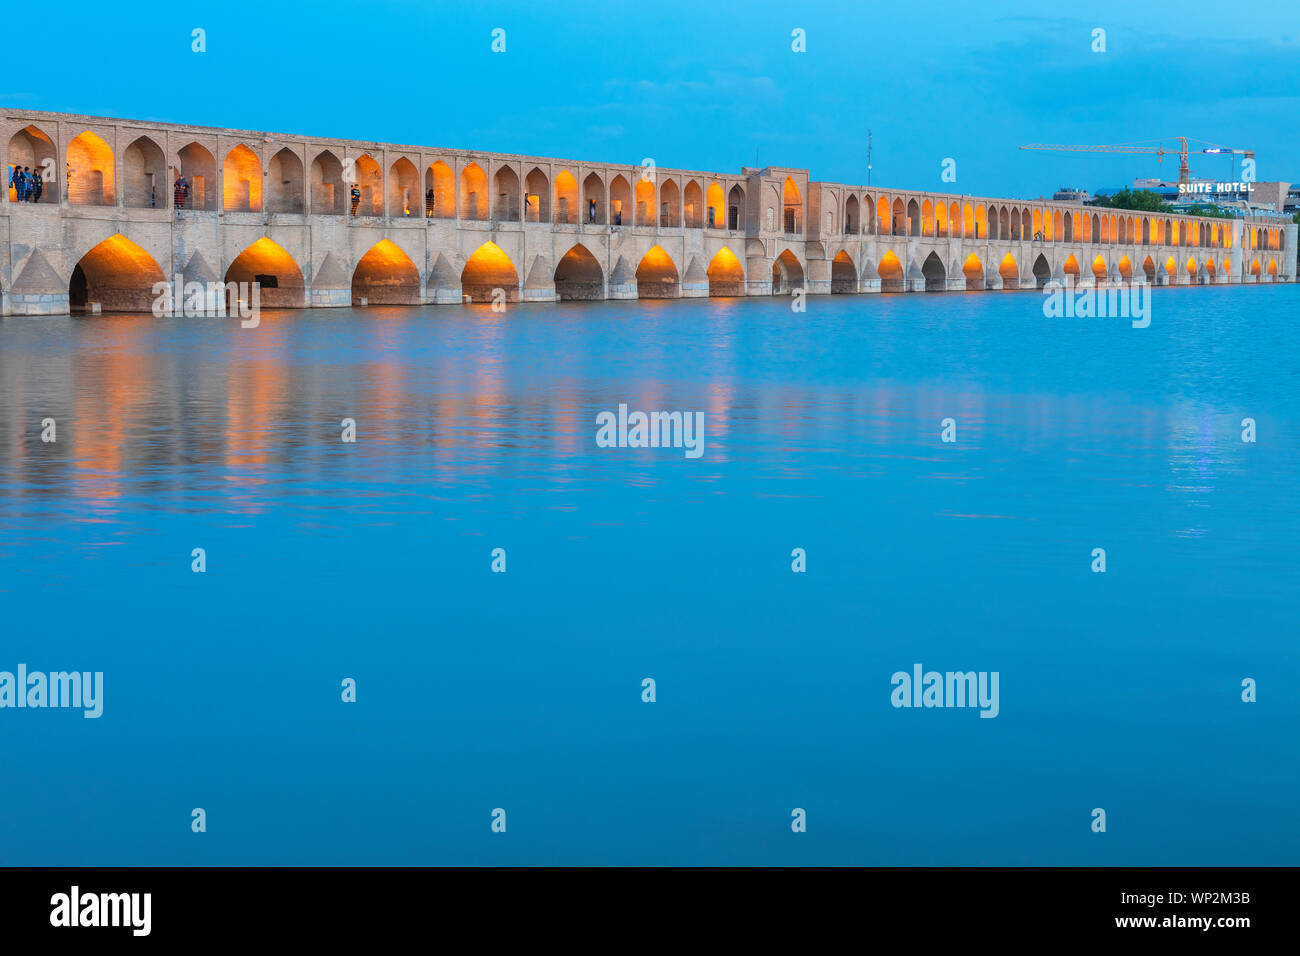 Si-O-se-pol, Allahverdi Khan Bridge at night, Zayanderud river, Ispahan, Isfahan, Iran Province Banque D'Images